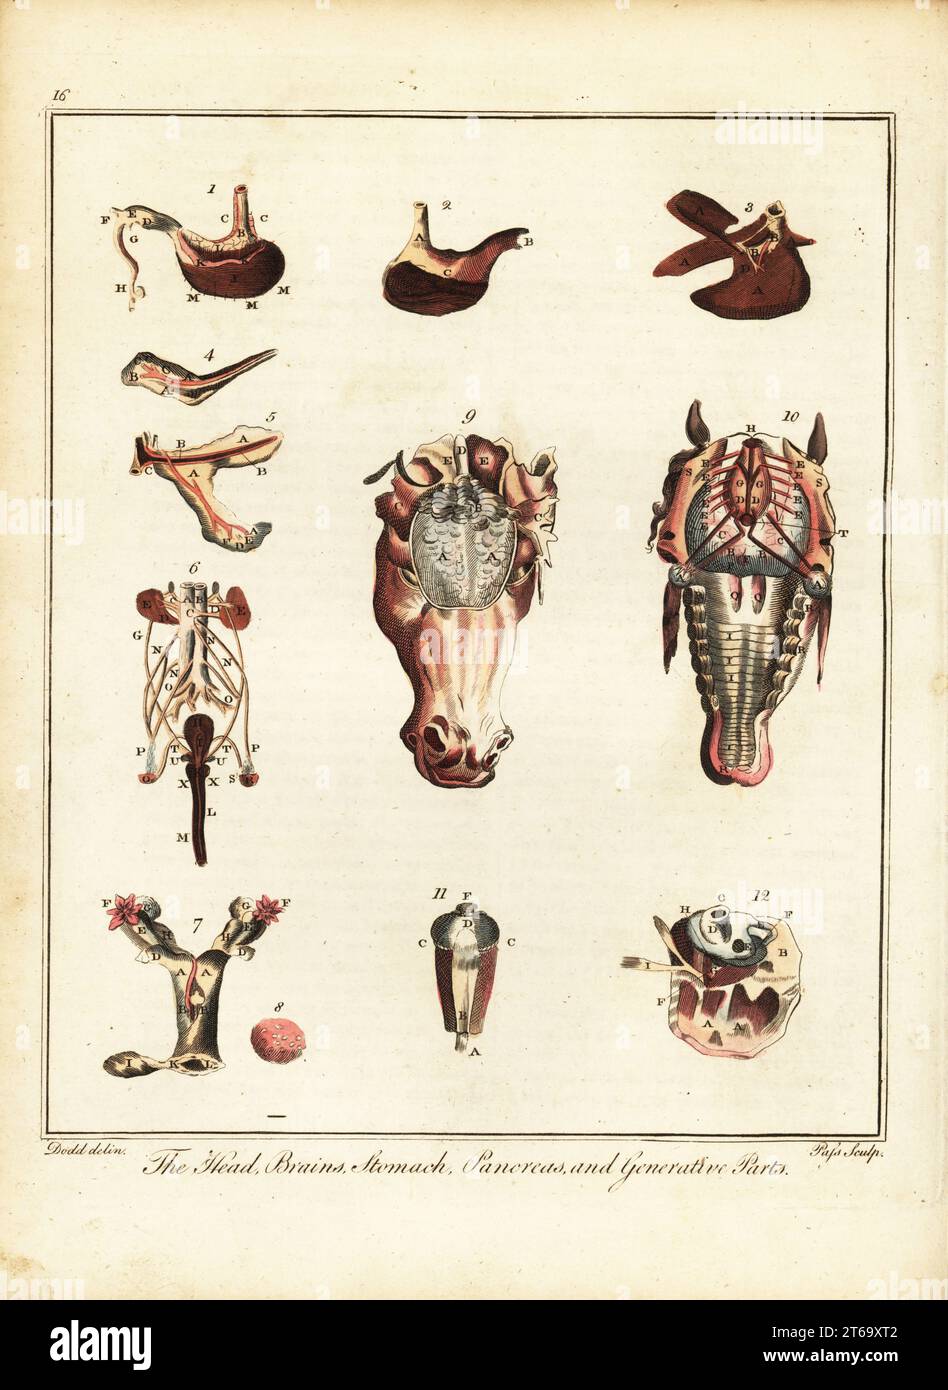 Anatomia di un cavallo. La testa, il cervello, lo stomaco, il pancreas e le parti generative. Stomaco 1,2, fegato 3, milza 4, pancreas 5, reni 6, utero 7, ovaie 8, cervello 9, sistema nervoso 10, occhio 11, orecchio 12. Incisione a mano su lastre di J. Pass dopo un'illustrazione di Daniel Dodd/J.. Al posto di William Augustus Osbaldistons the British Sportsman, or Nobleman, Gentleman and Farmers Dictionary of Recreation and Amusement, J. Stead, Londra, 1792. Foto Stock